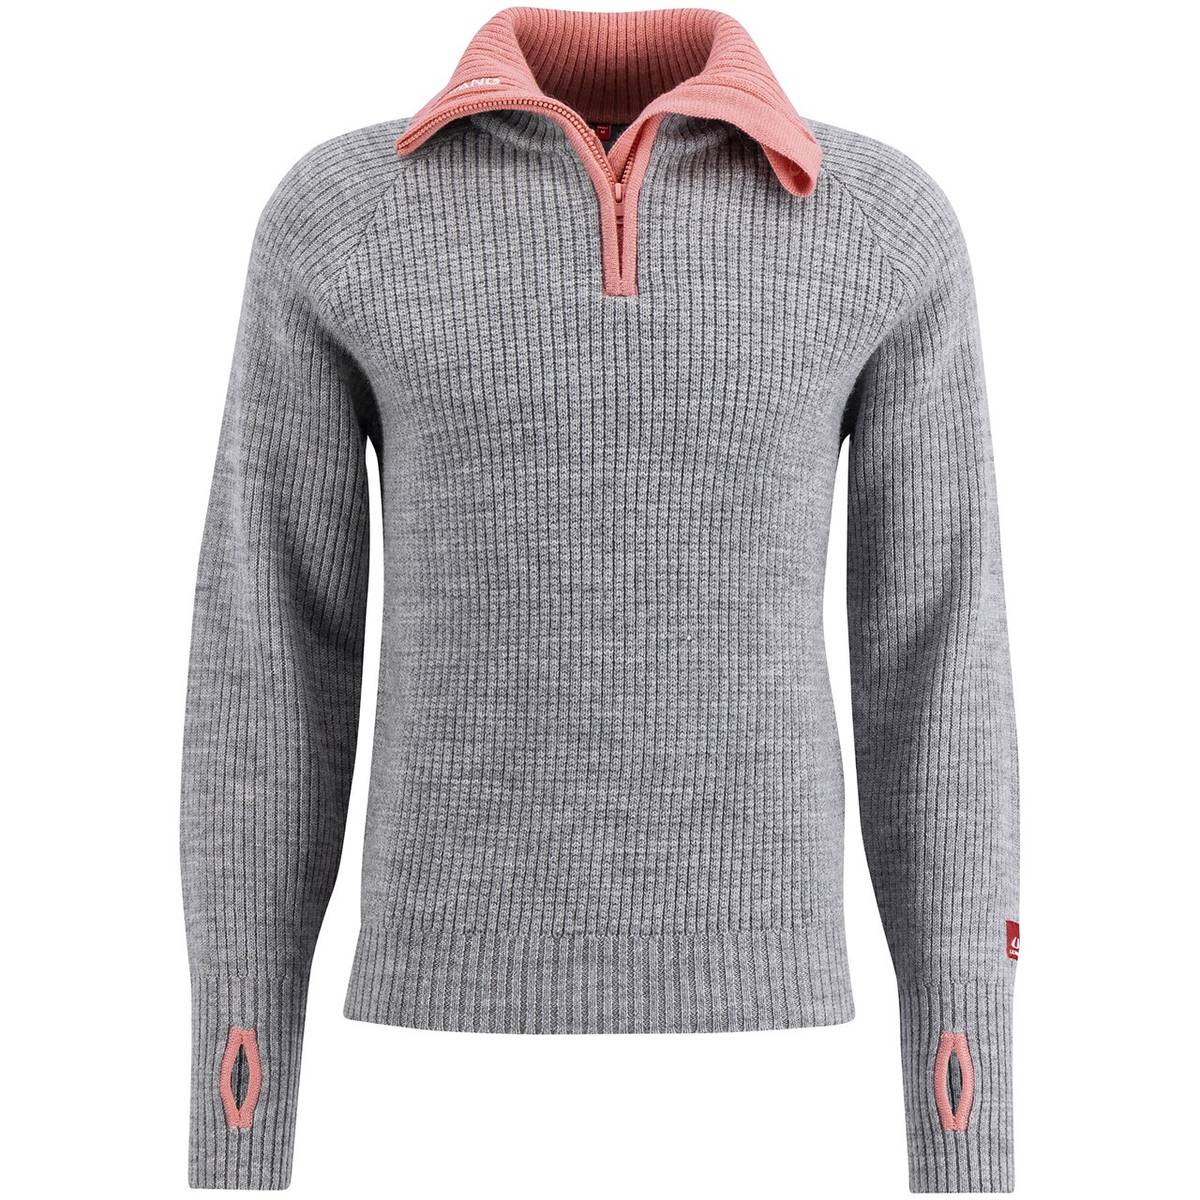 Ulvang Rav Sweater W/Zip Grey Melange/Delicate Pink/Vanilla